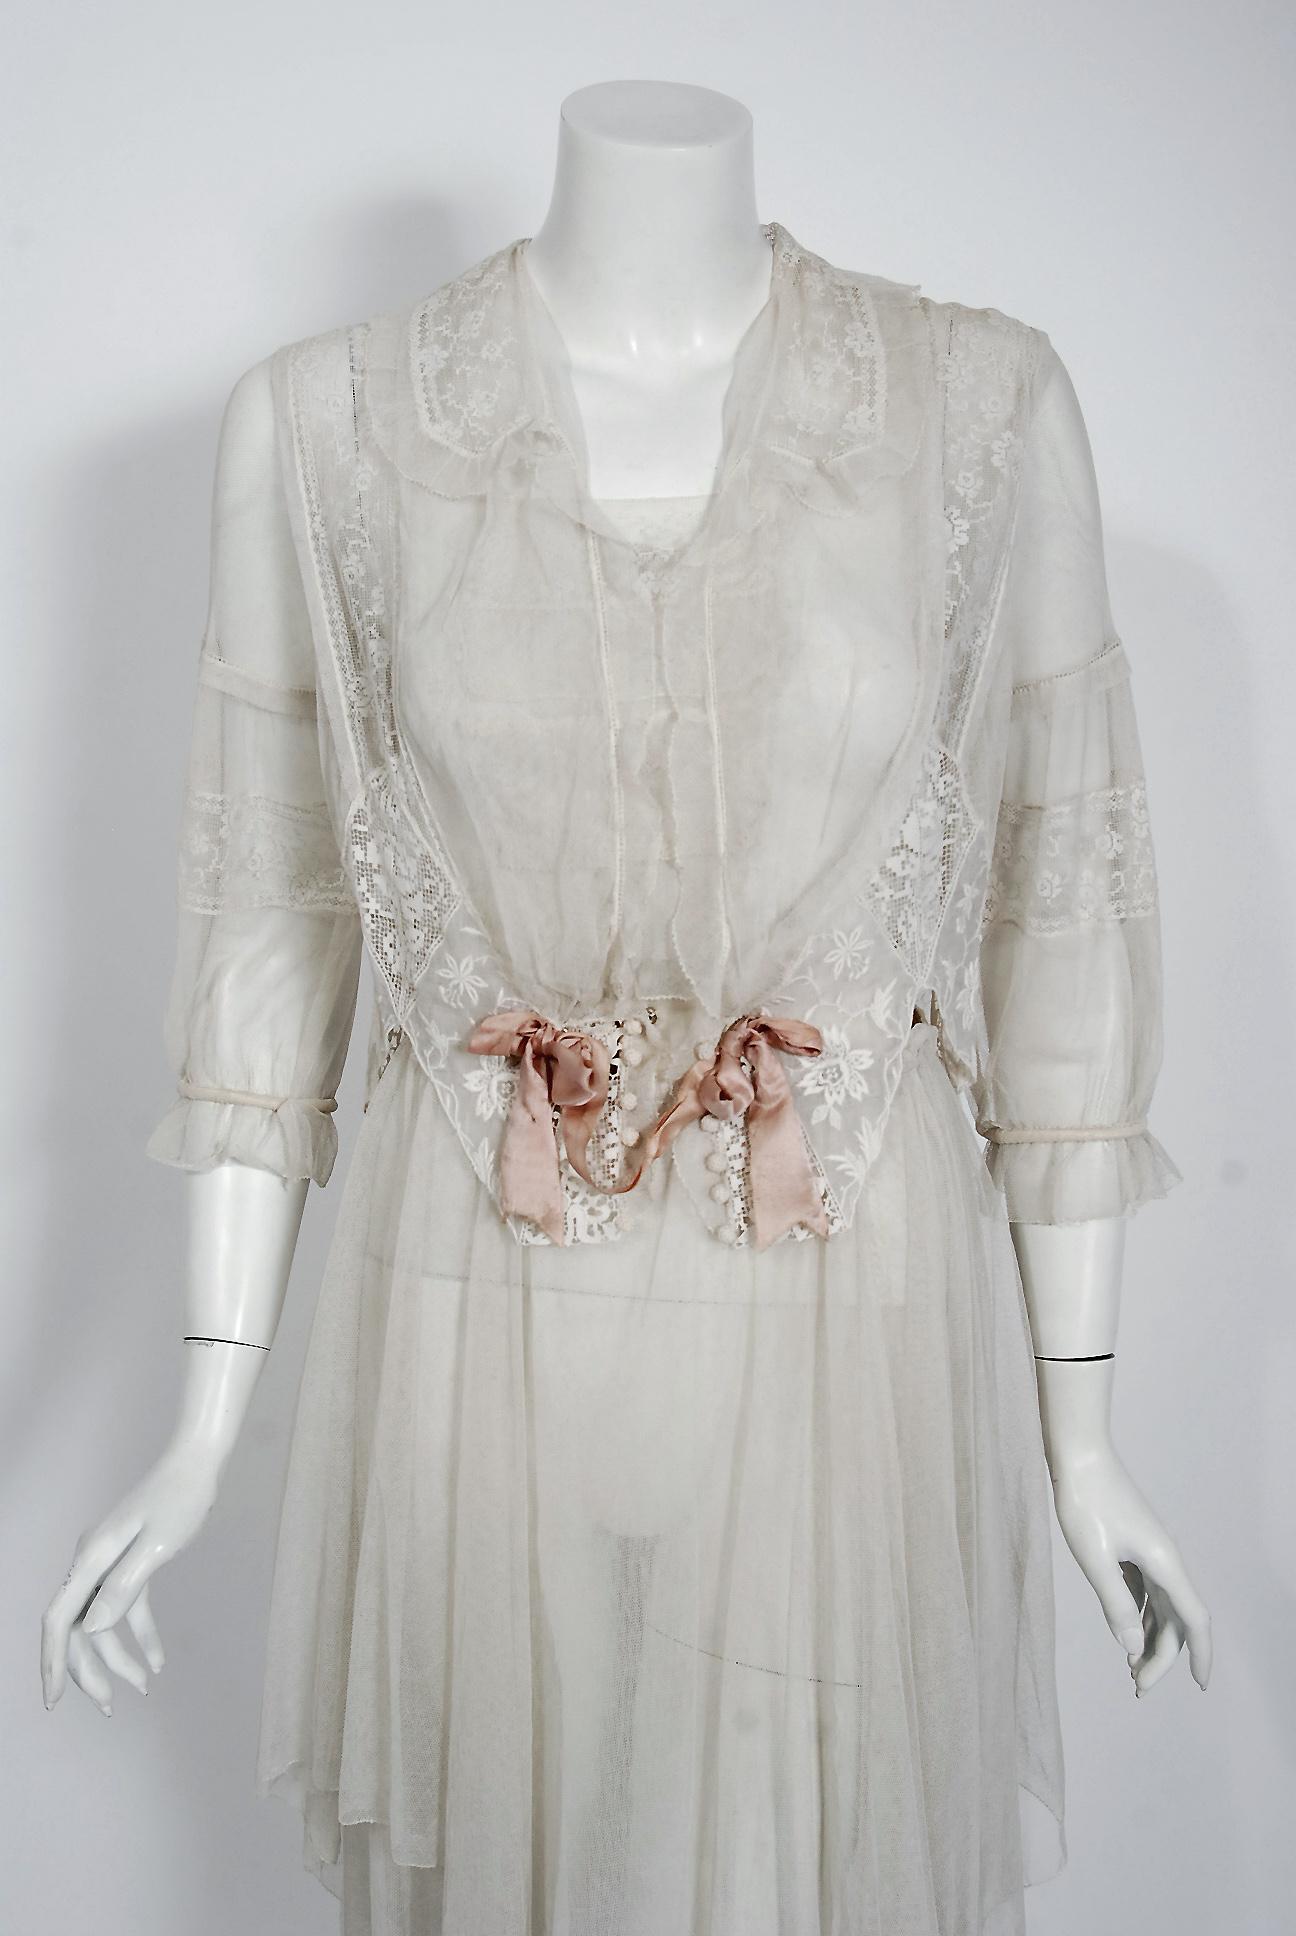 Les robes blanches romantiques du début du 20e siècle sont des favoris éternels et celle-ci est un véritable coup de foudre. Le style couture complet du vêtement est si moderne ; les tissus fins sont un trésor de l'art de l'aiguille. La robe est